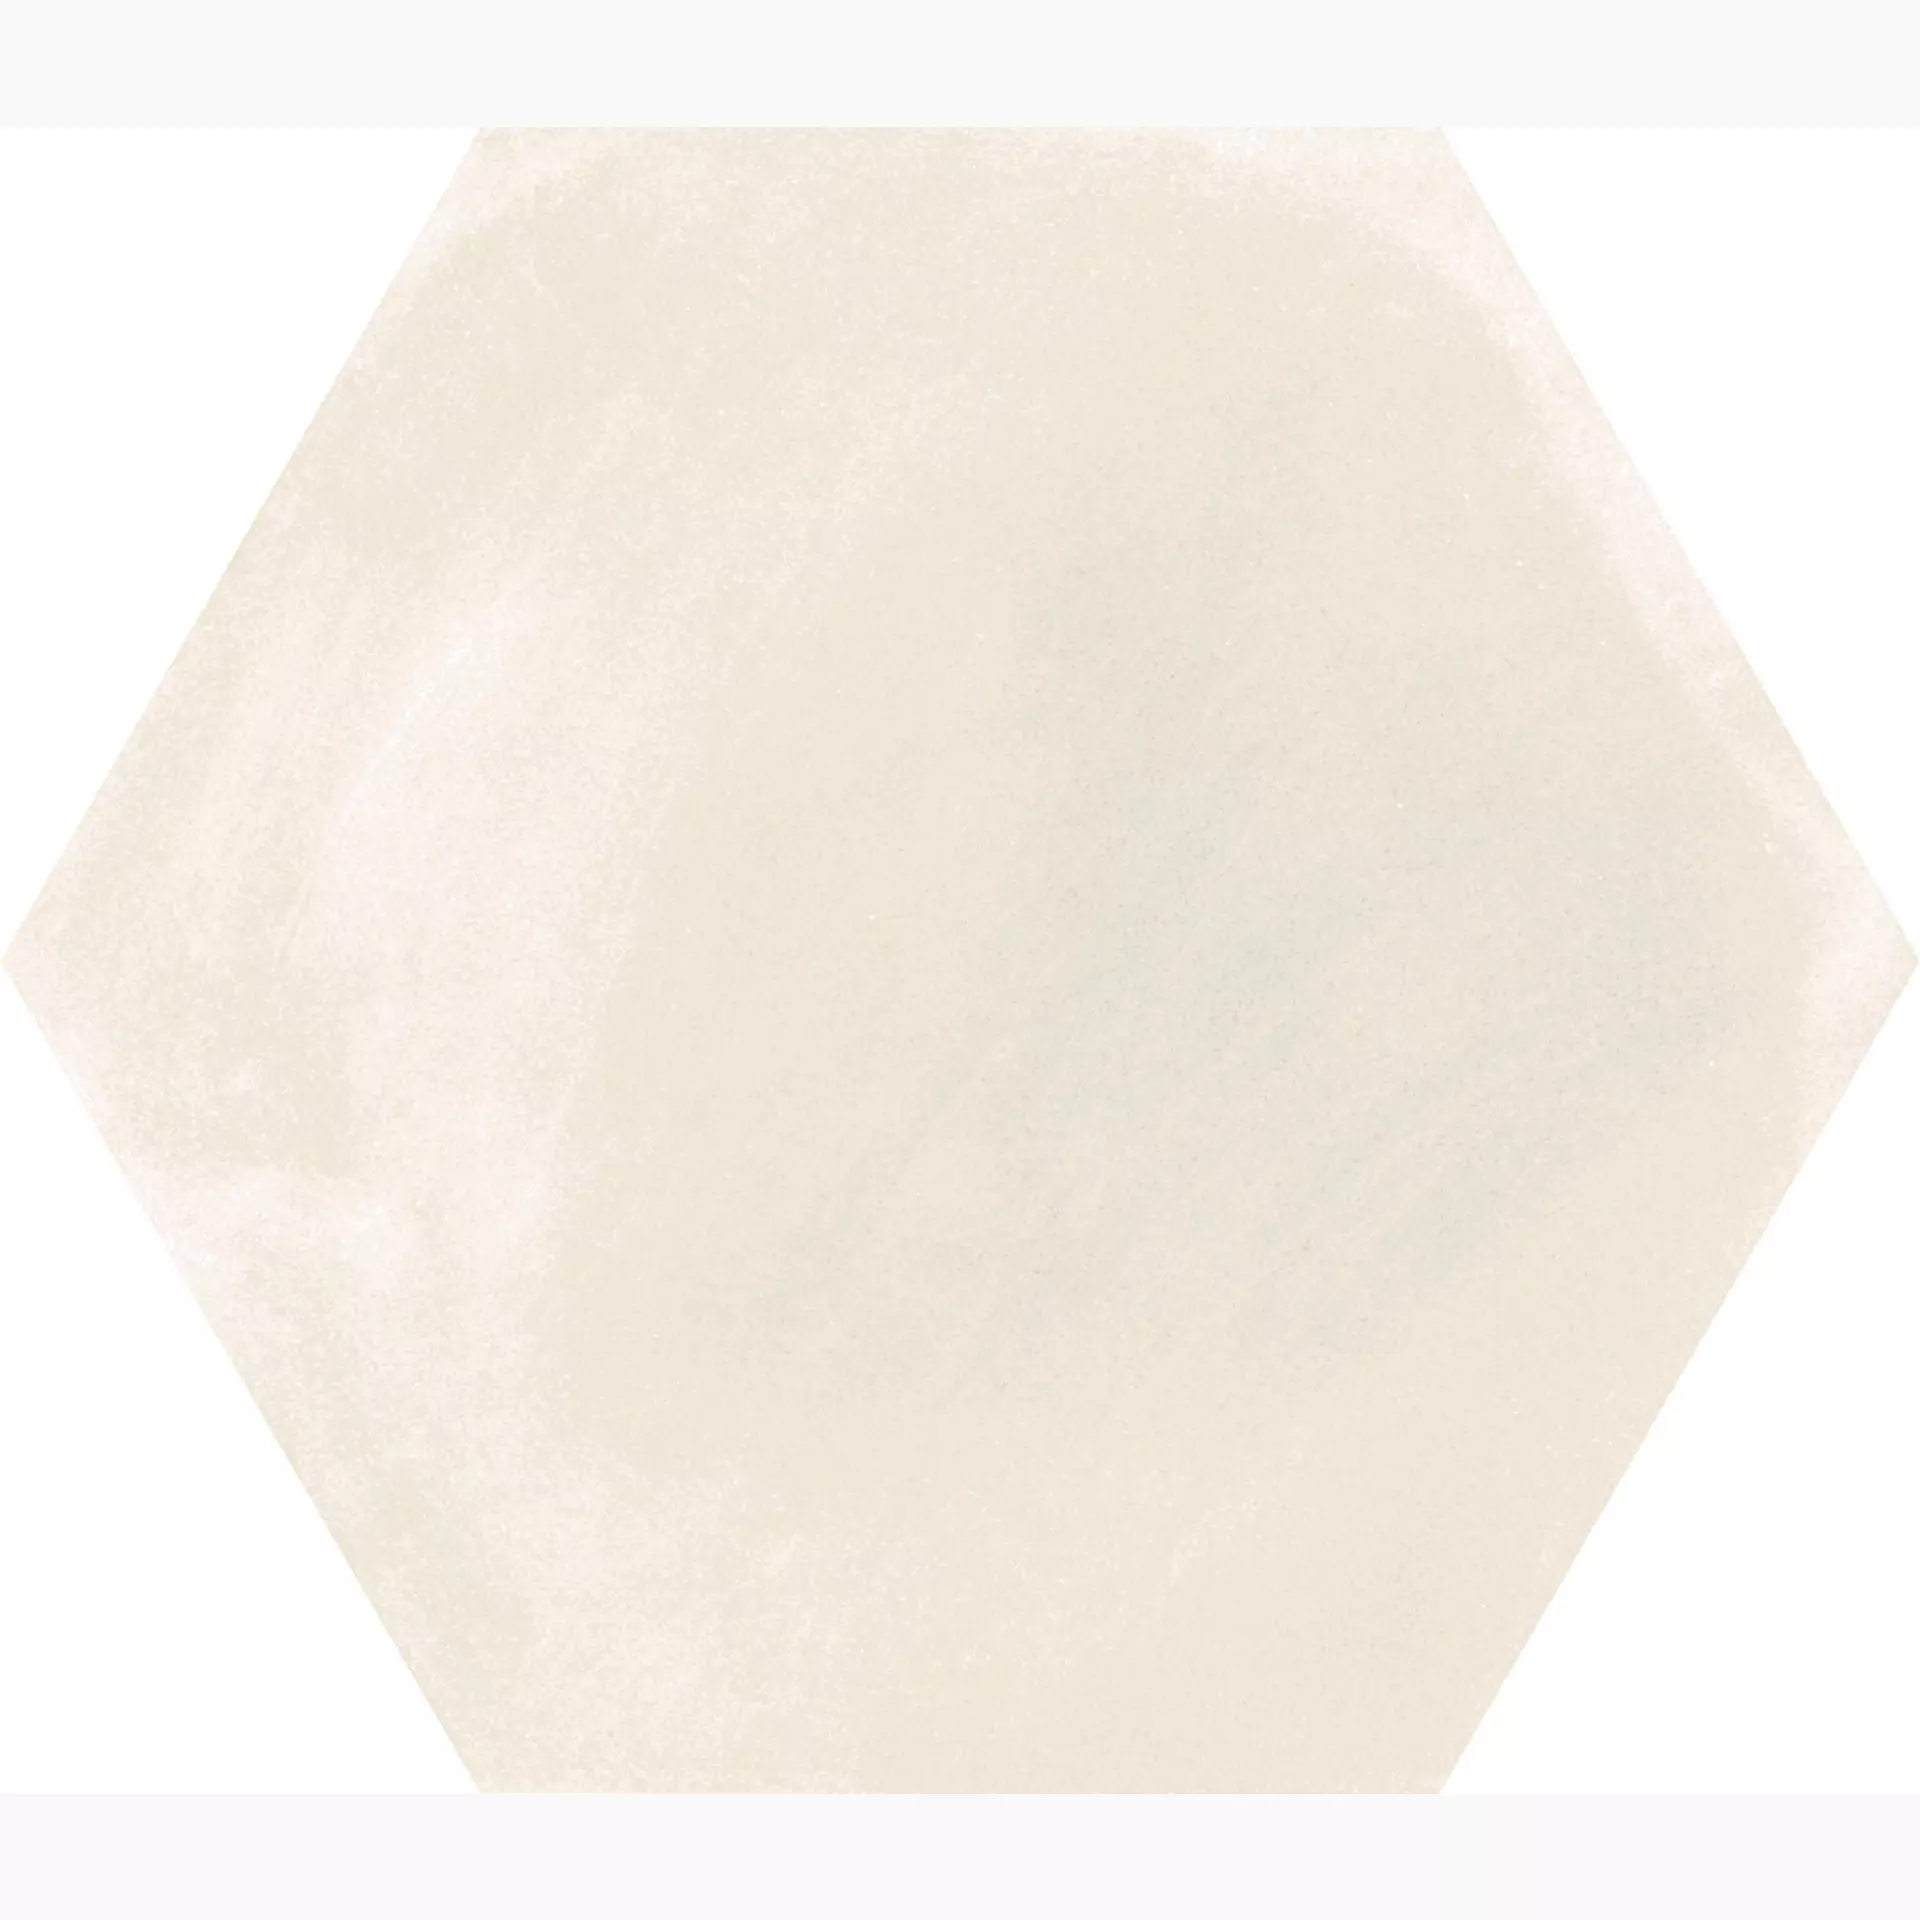 Ragno Stratford White Naturale – Matt Esagona R8YE 18,2x21cm 10mm